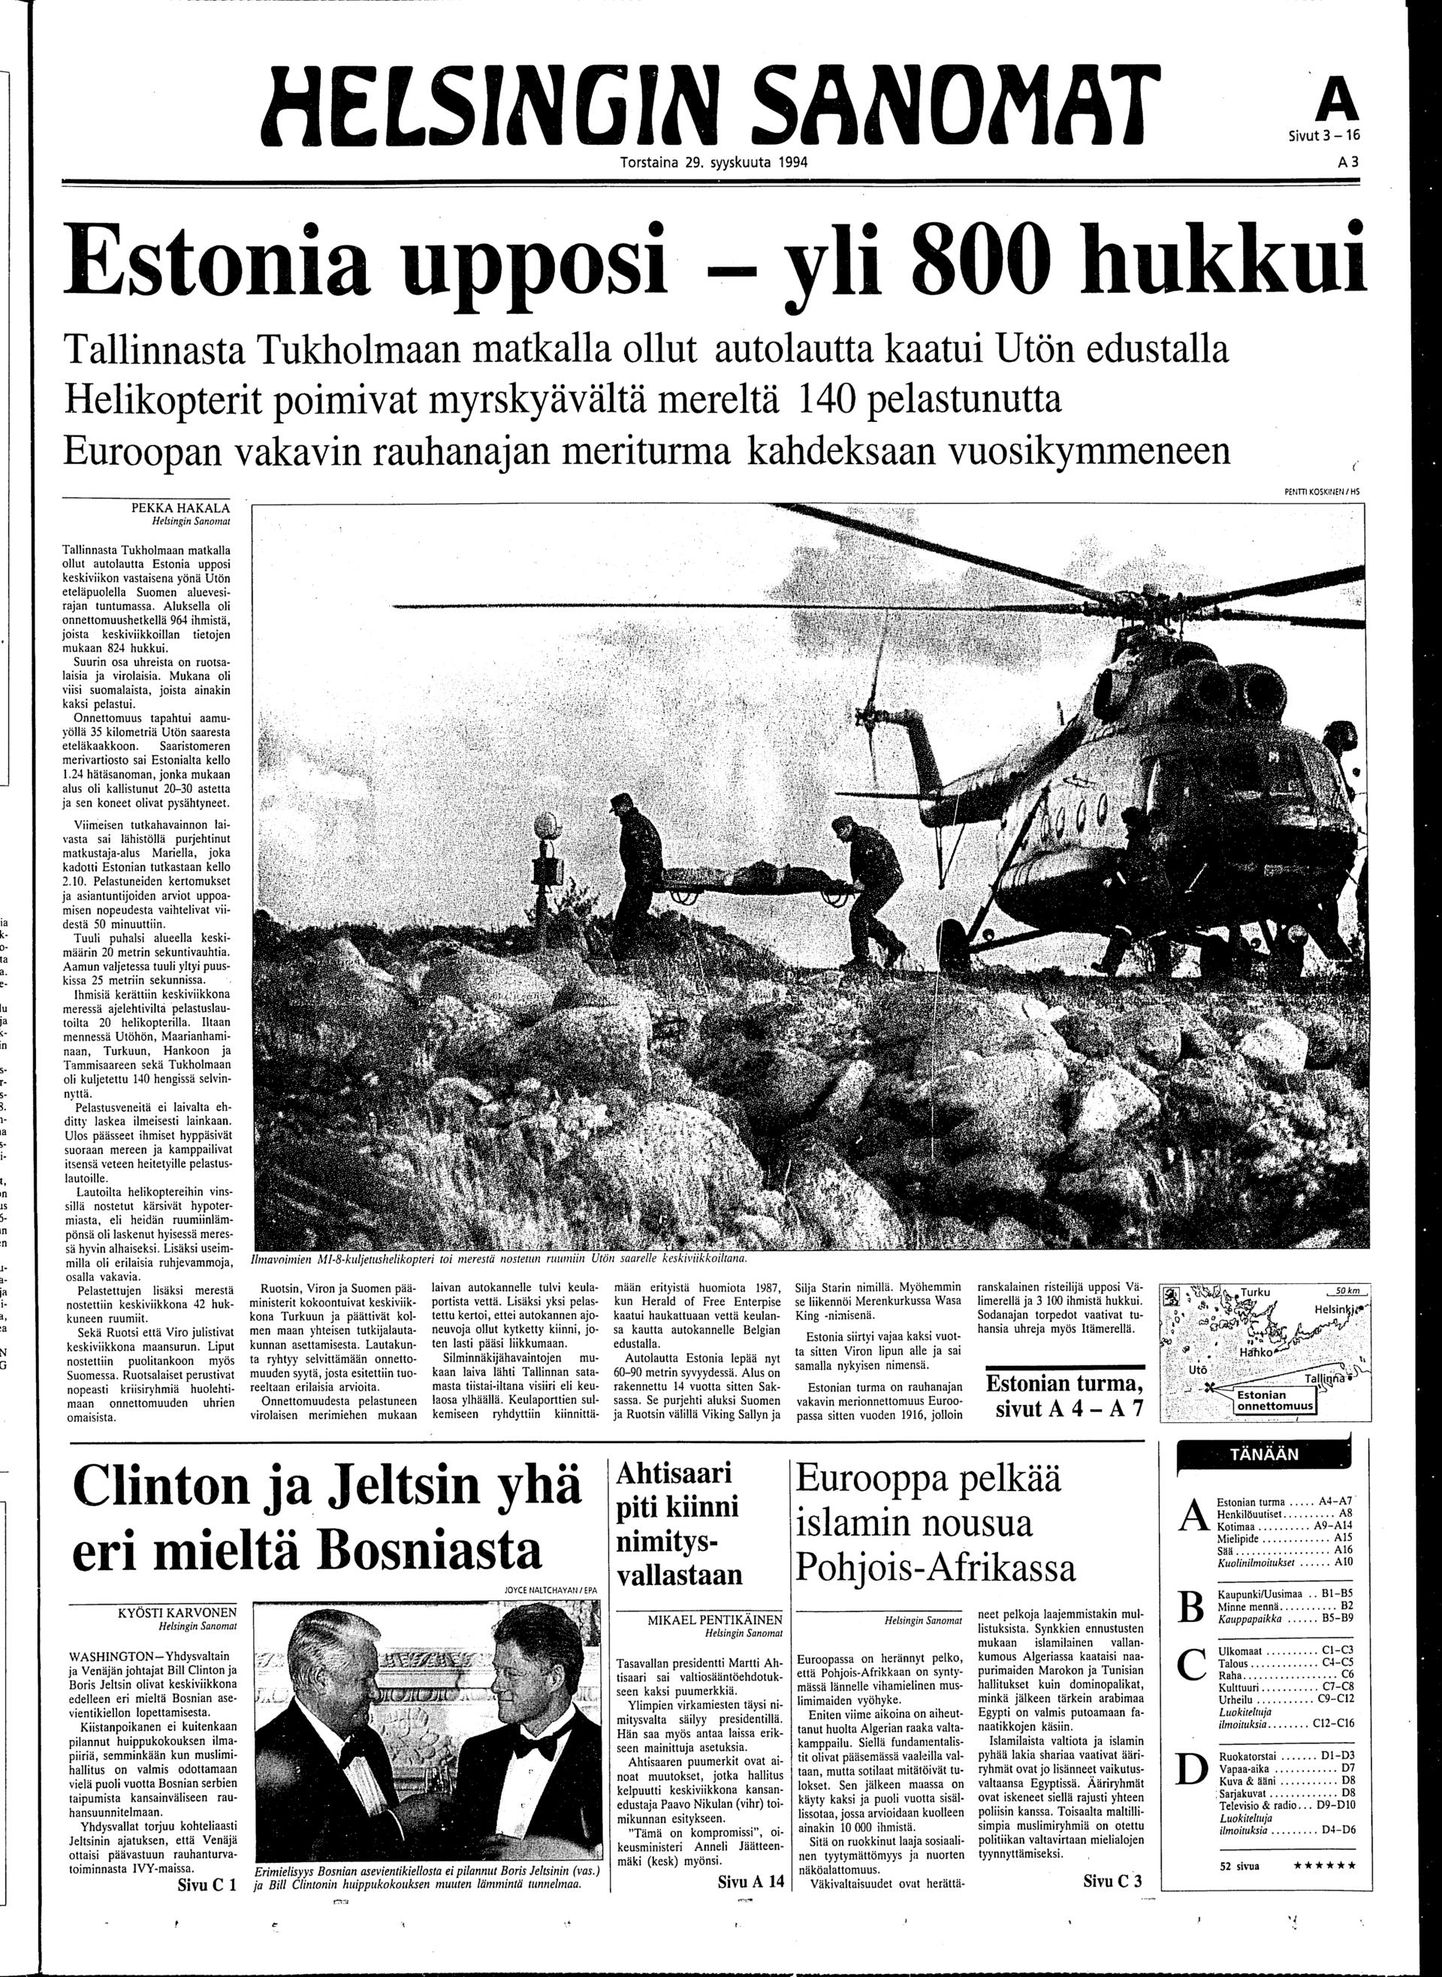 Helsingin Sanomate esikülg 29. septembril 1994. Külje teksti pani kokku katastroofipäeva toimetuses veetnud ja kolleegide sõnumeid oodanud Pekka Hakala.